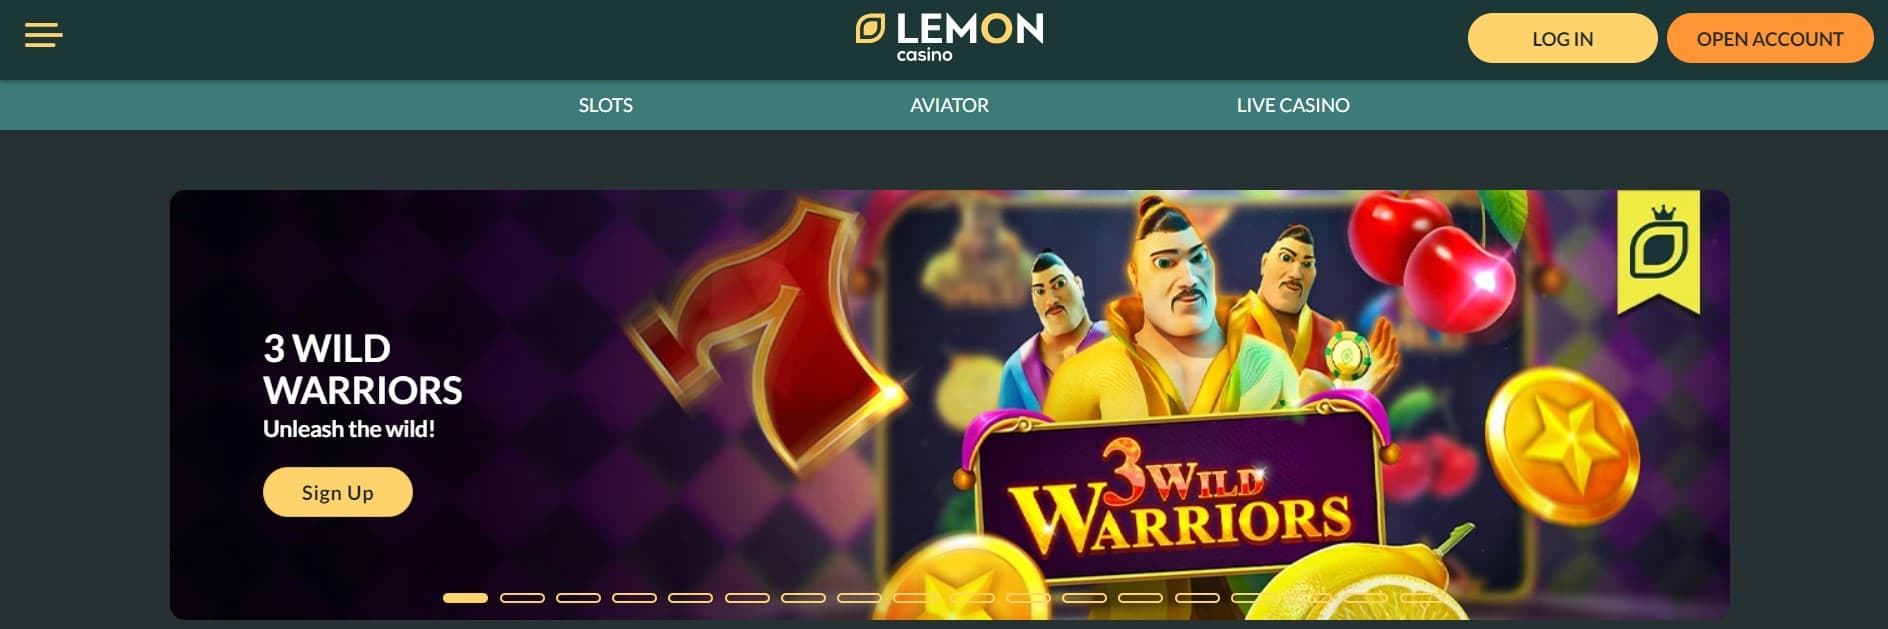 lemon casino main page